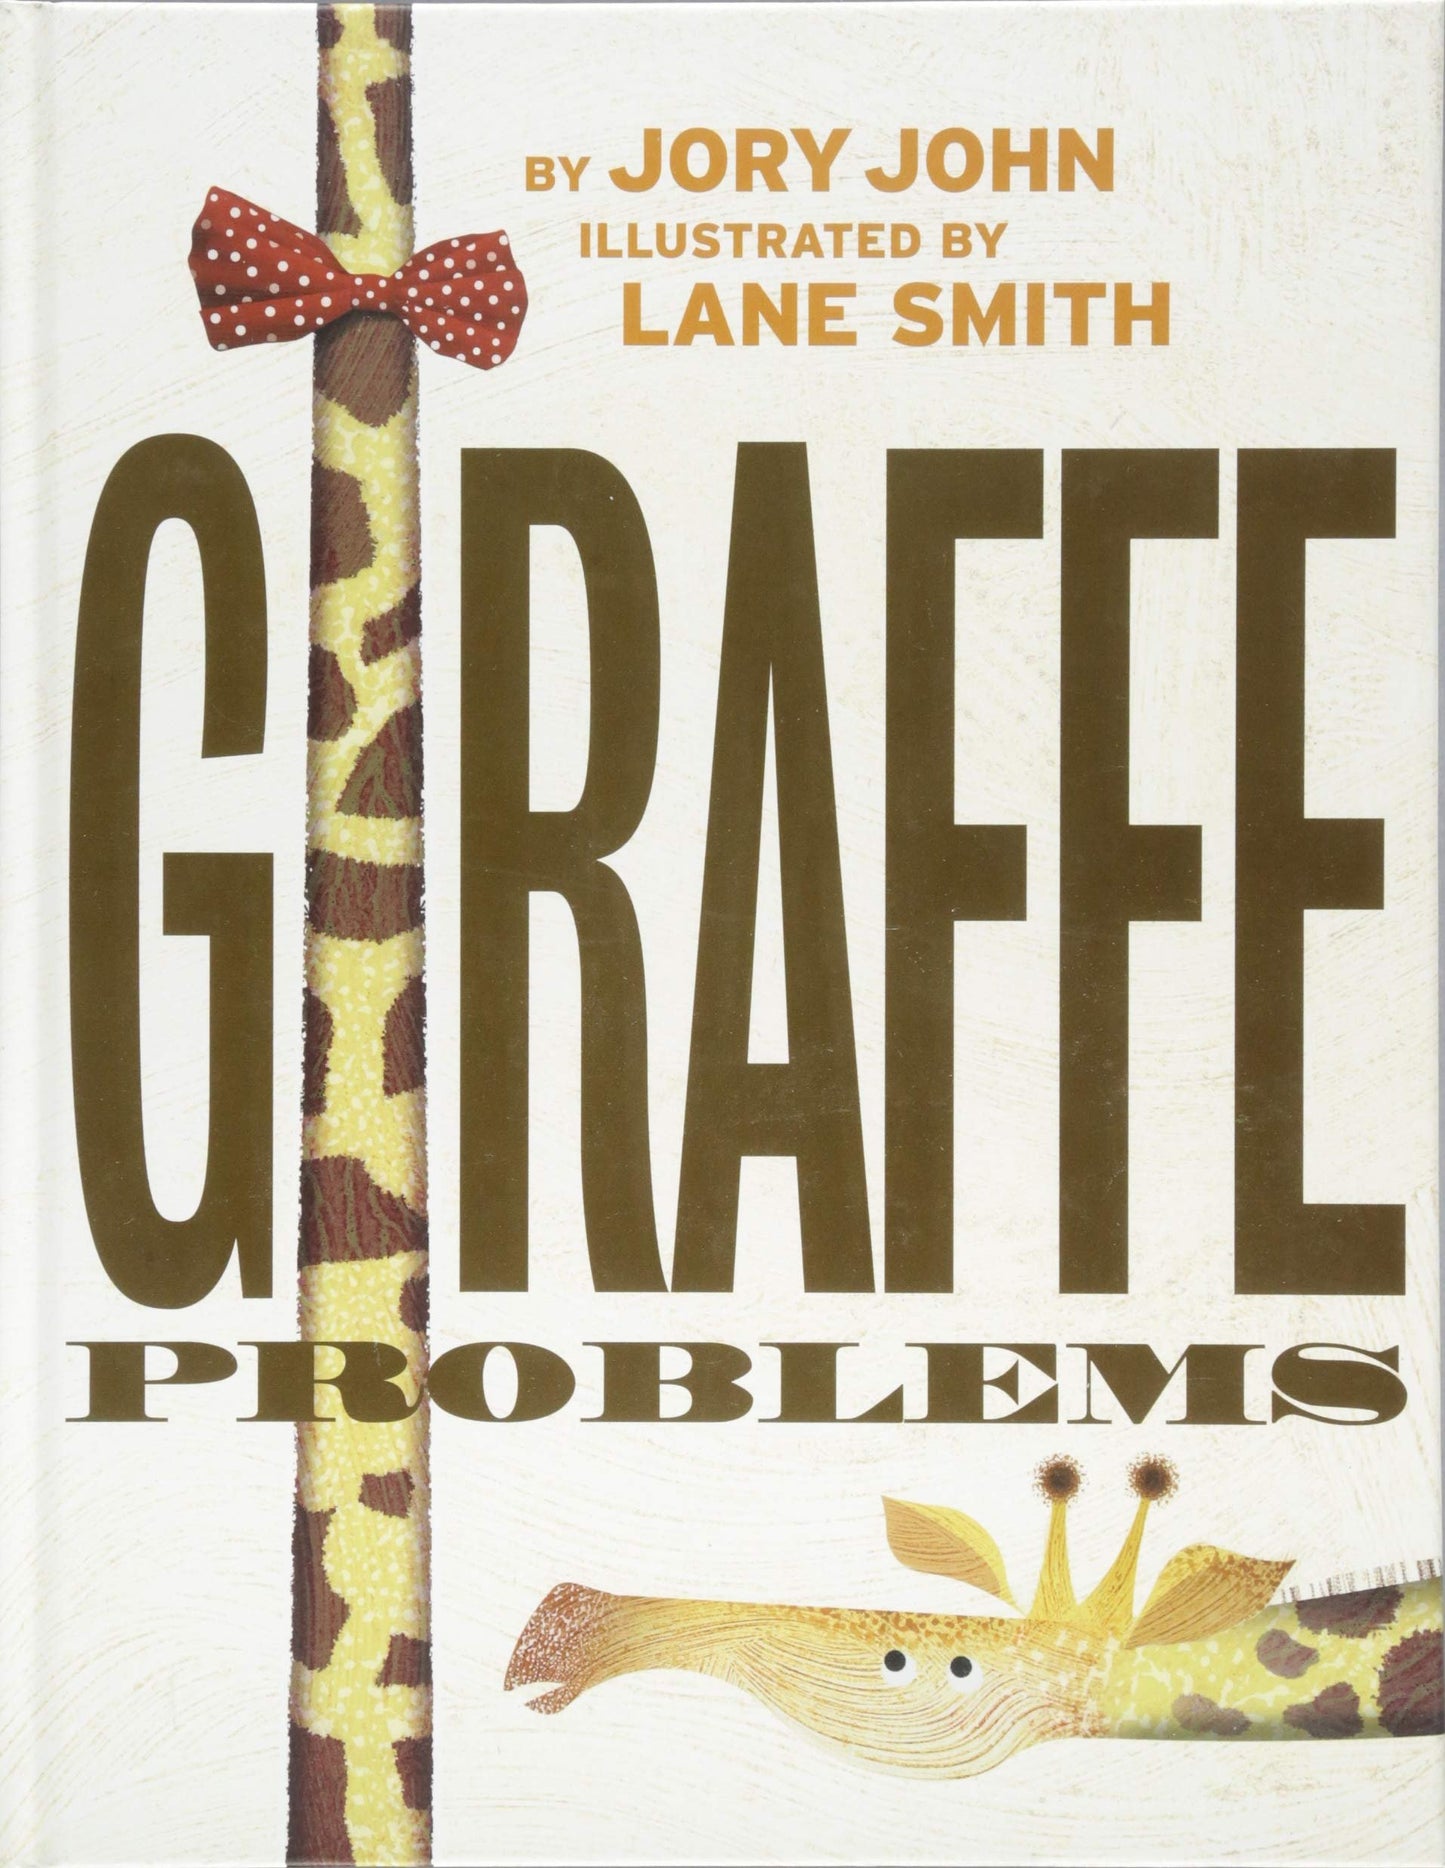 Giraffe Problems: A Hilarious Children's Book